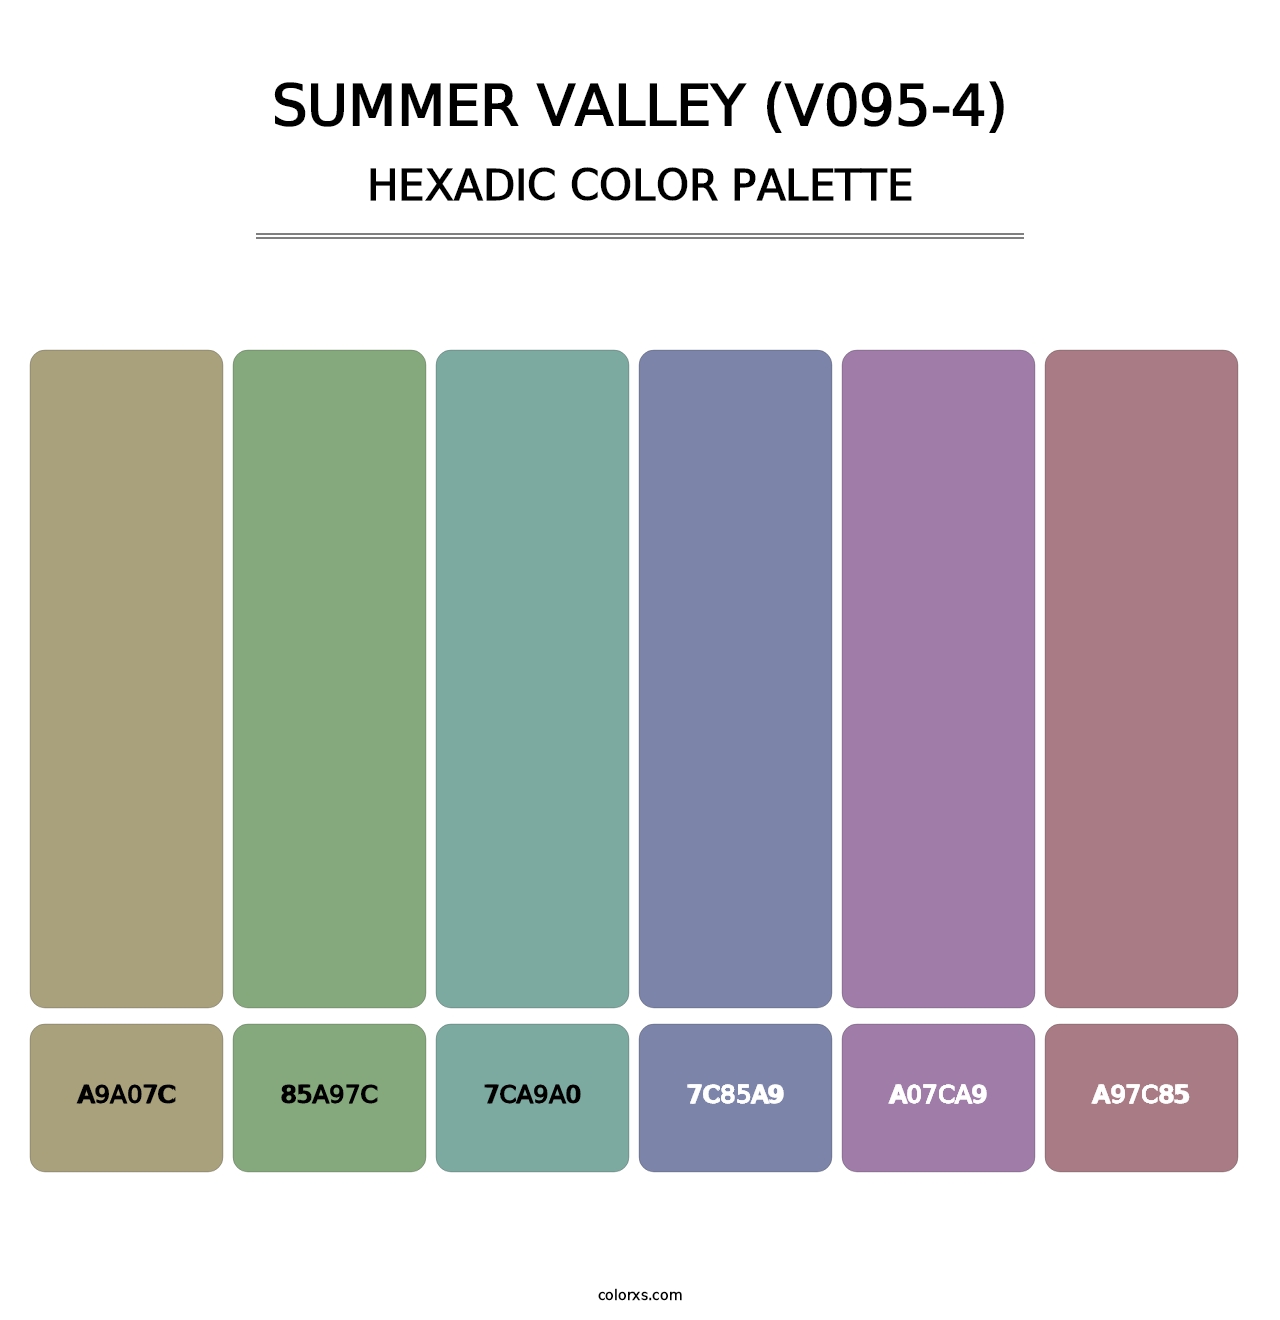 Summer Valley (V095-4) - Hexadic Color Palette